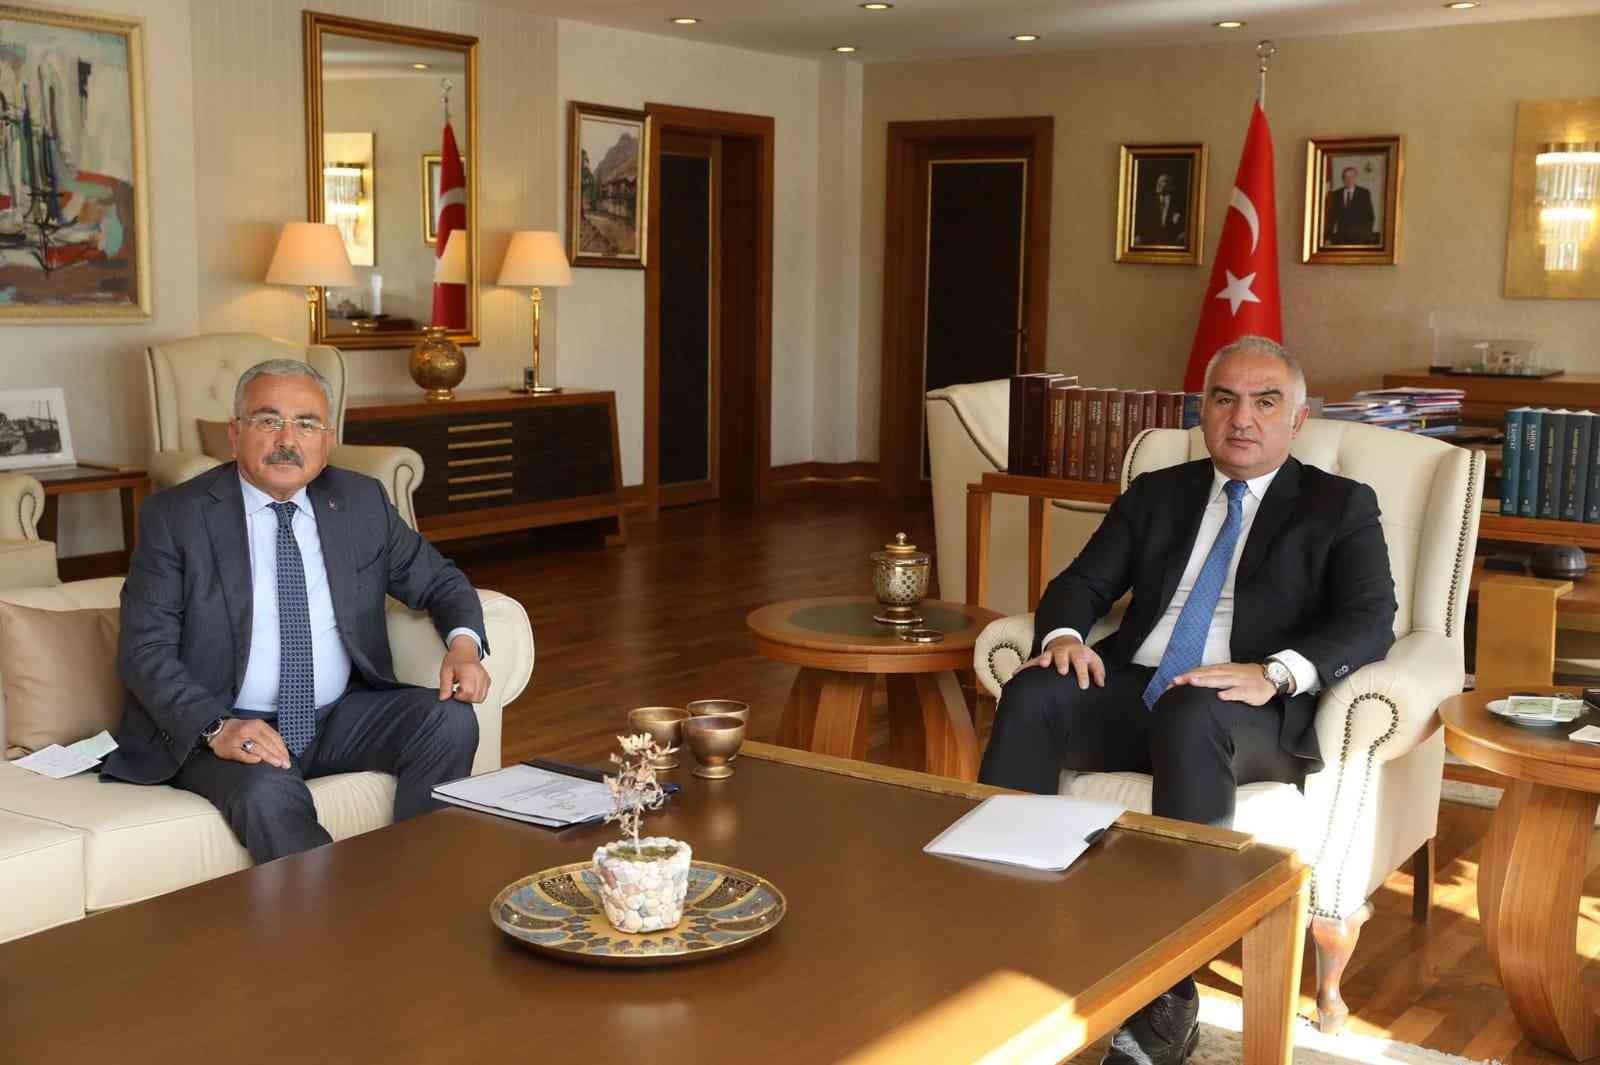 Başkan Güler: “Ordu’muzu kültür ve turizmde çok daha ileriye taşıyacağız” #ordu